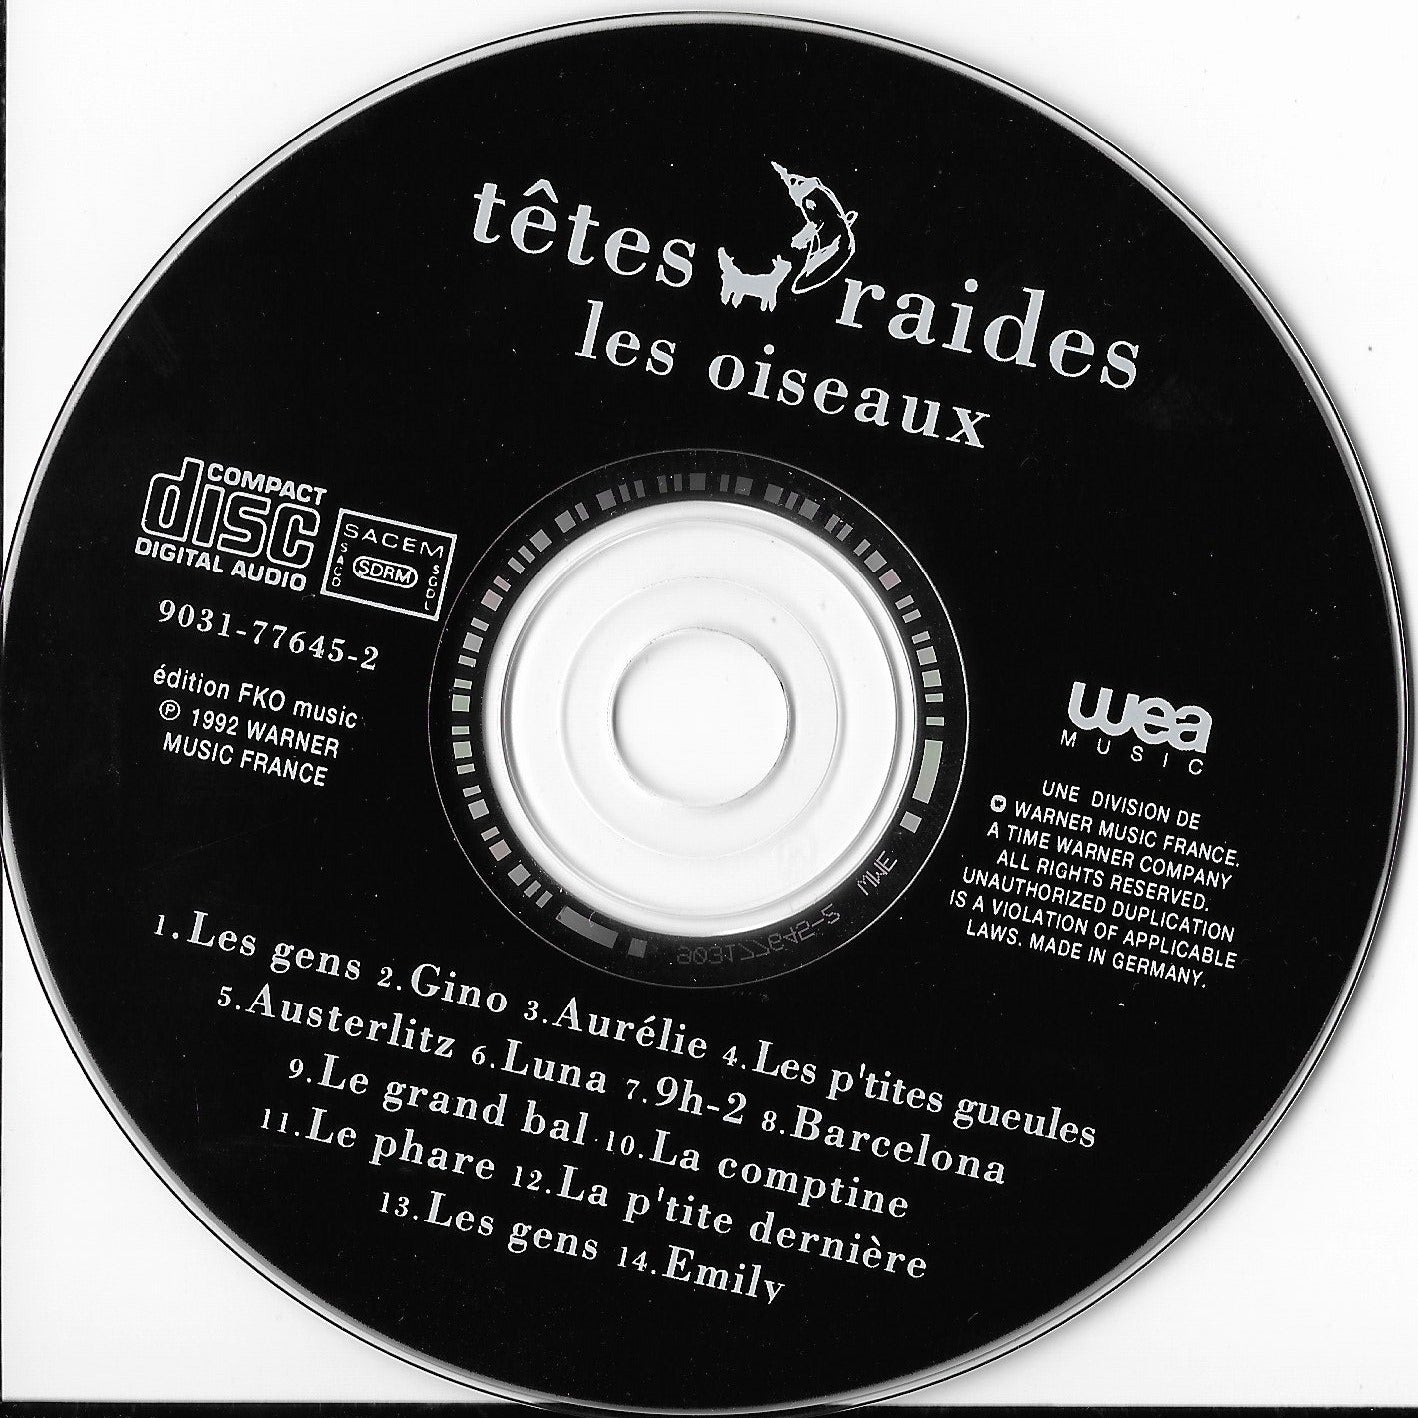 TETES RAIDES - Les Oiseaux